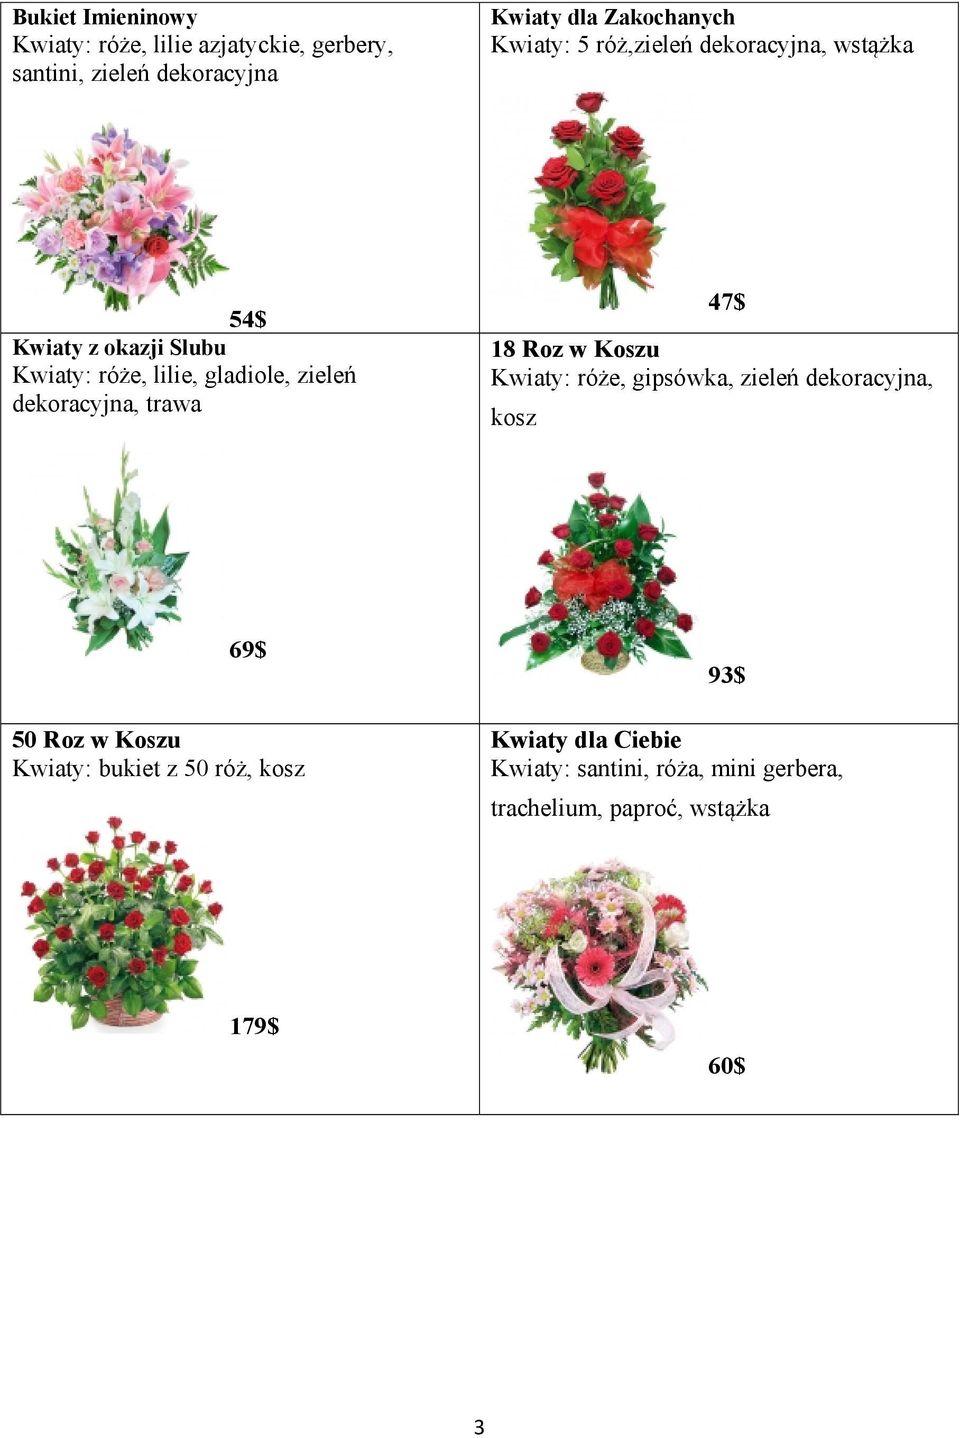 dekoracyjna, trawa 47$ 18 Roz w Koszu Kwiaty: róże, gipsówka, zieleń dekoracyjna, kosz 50 Roz w Koszu Kwiaty: